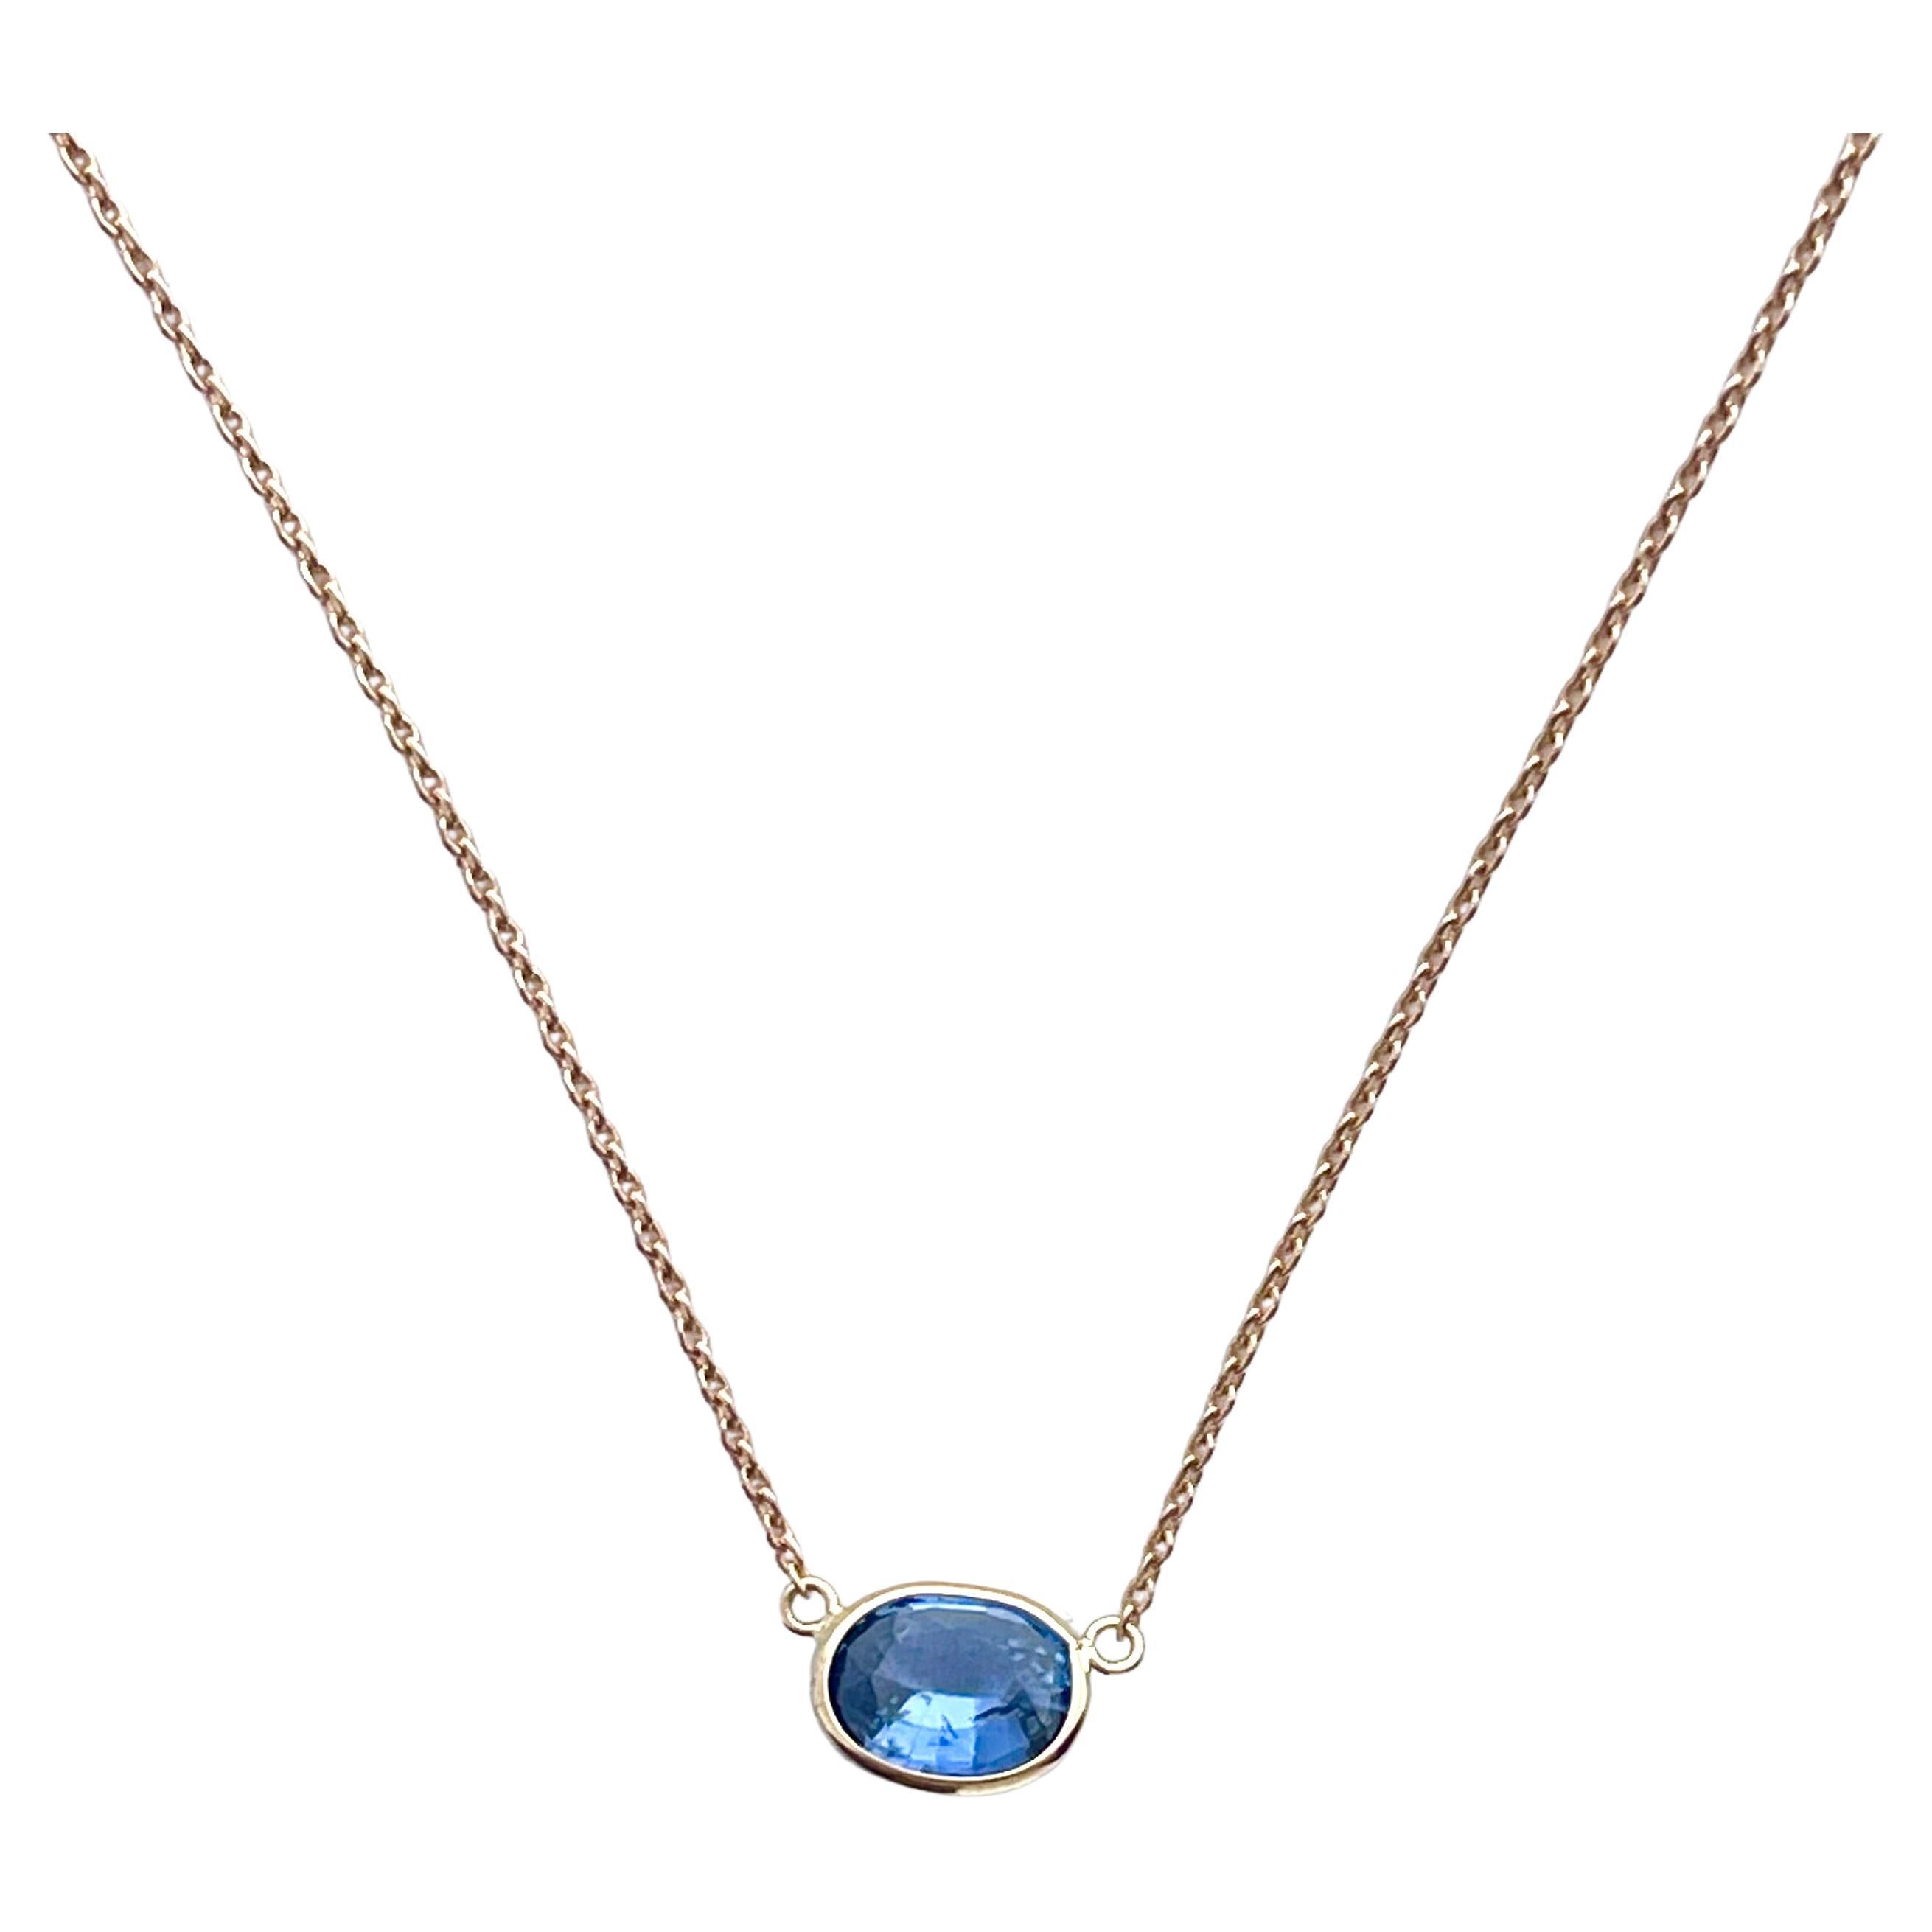 1,42 Karat Gewicht Blauer Saphir Oval Cut Solitär Halskette in 14k Rose Gold 